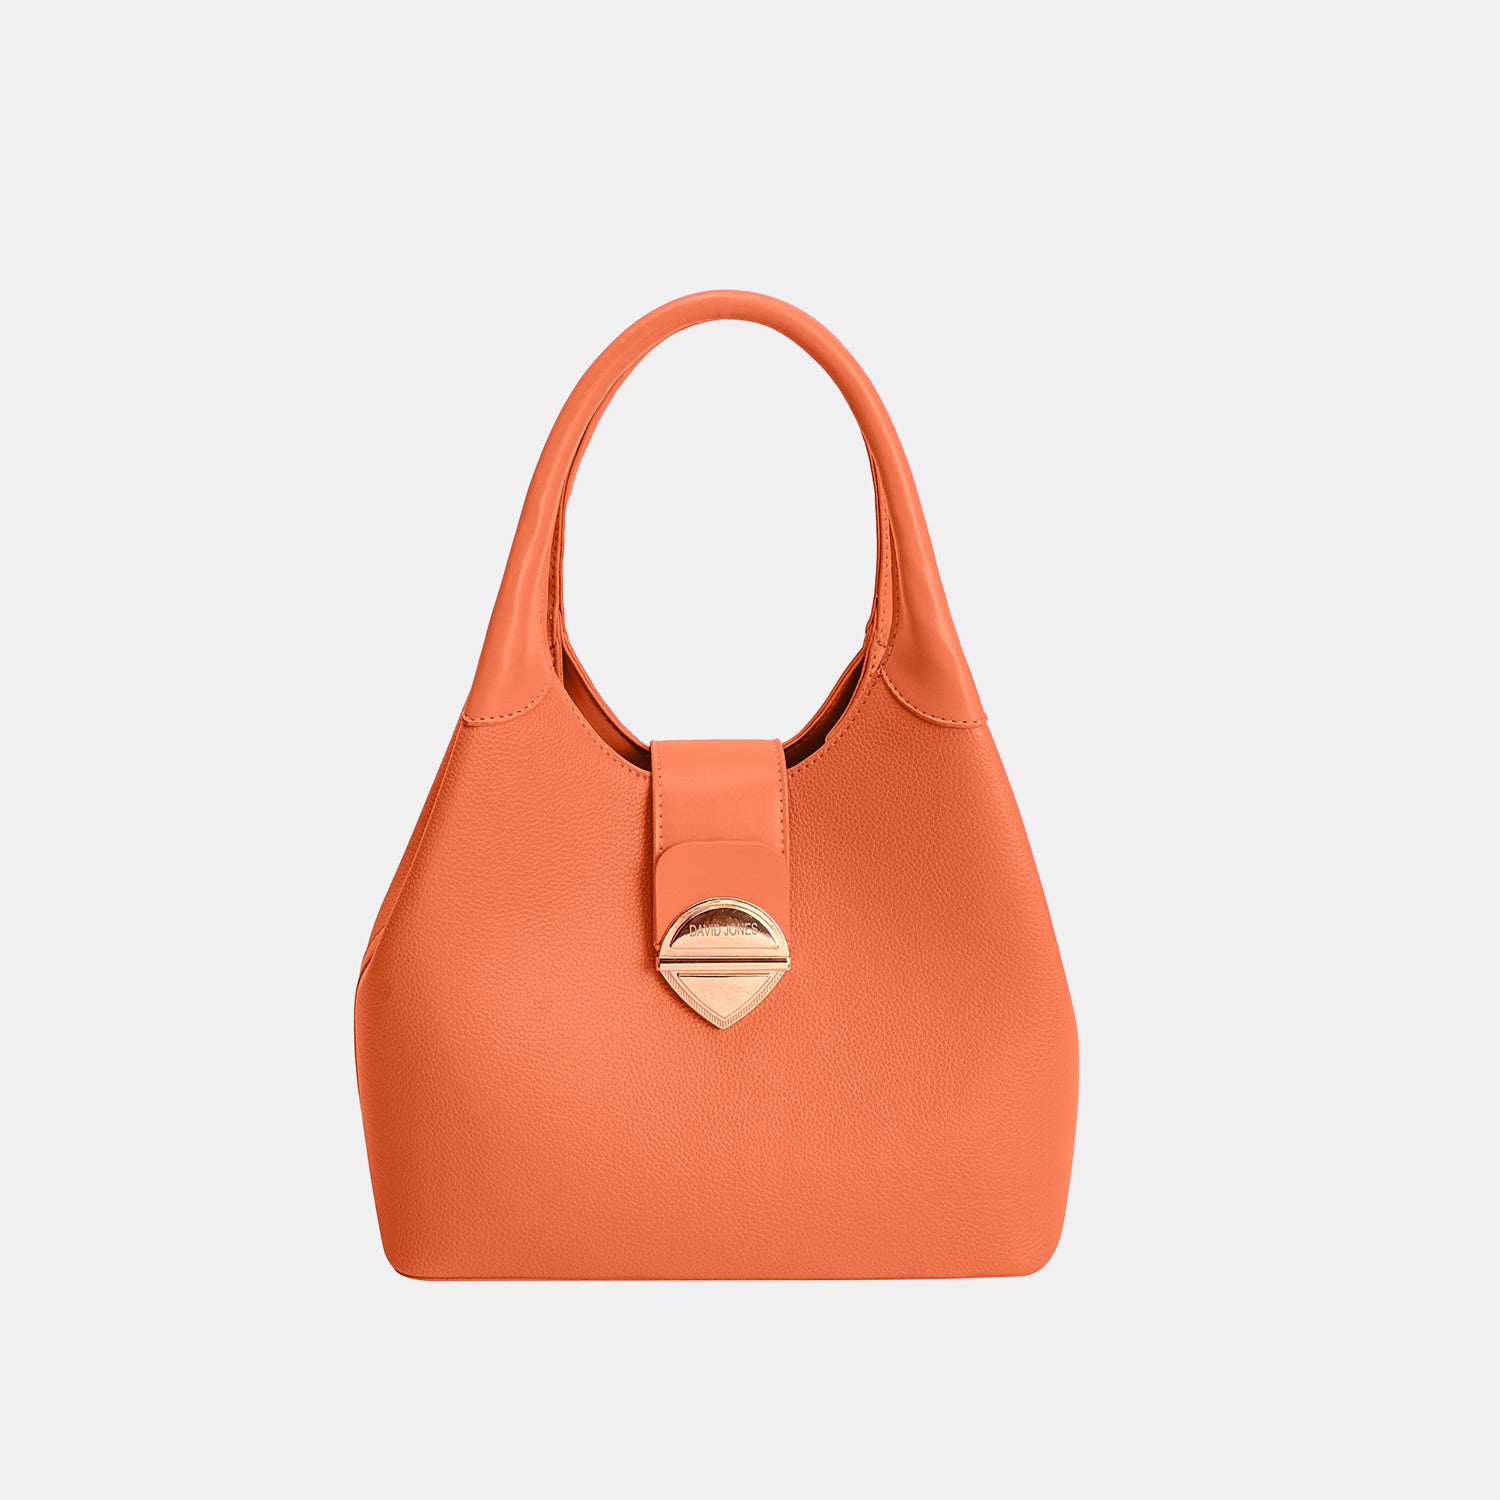 David Jones PU Leather Handbag Orange One Size 